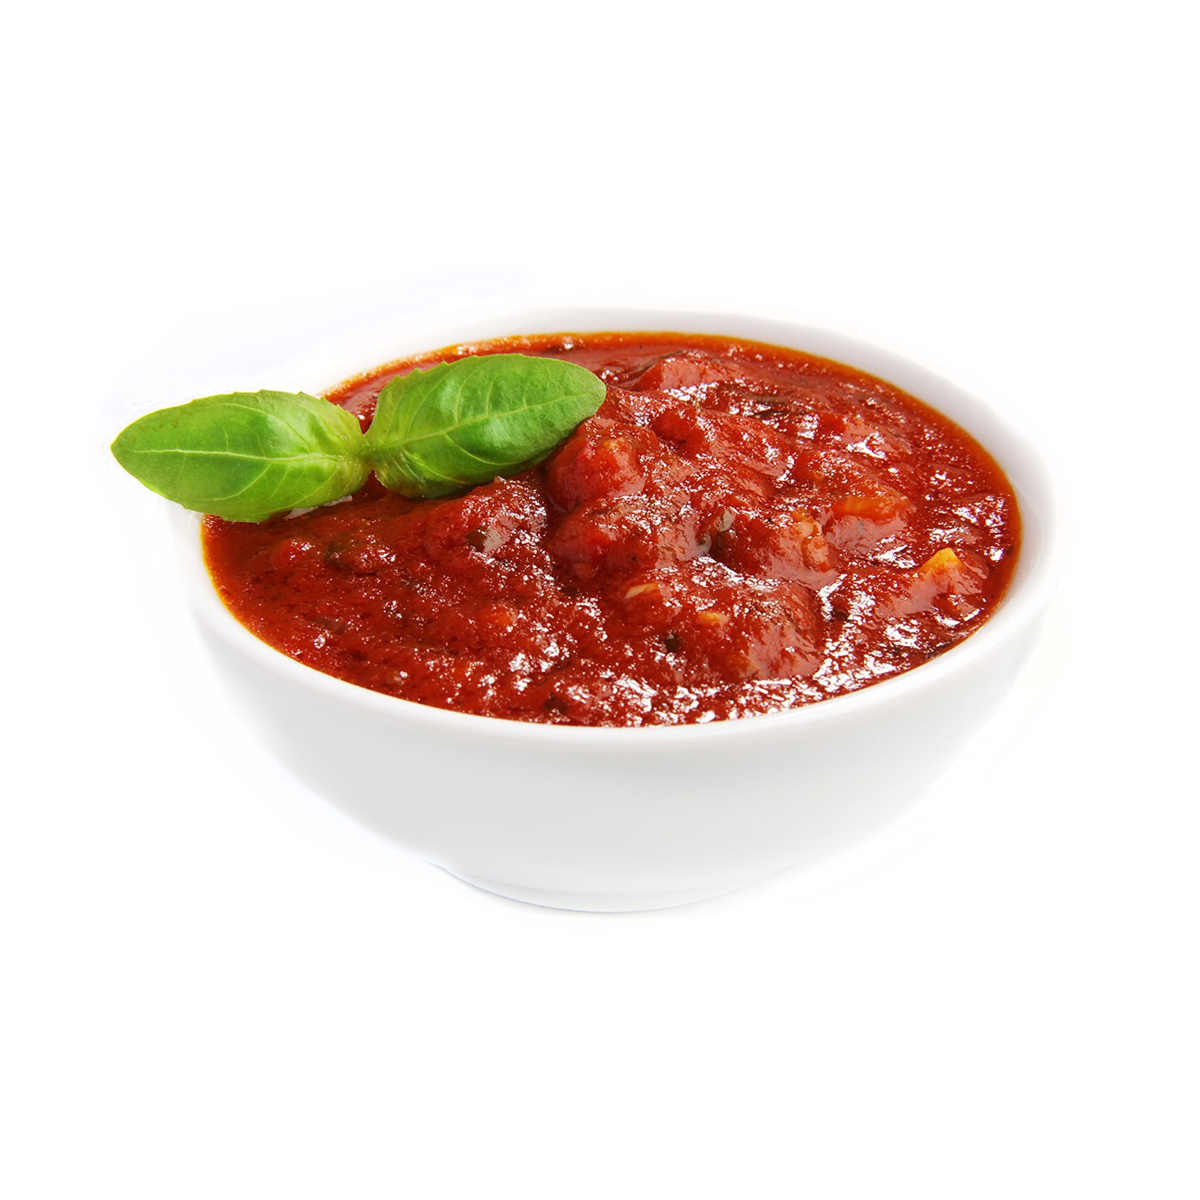 фирменный томатный соус для пиццы фото 99